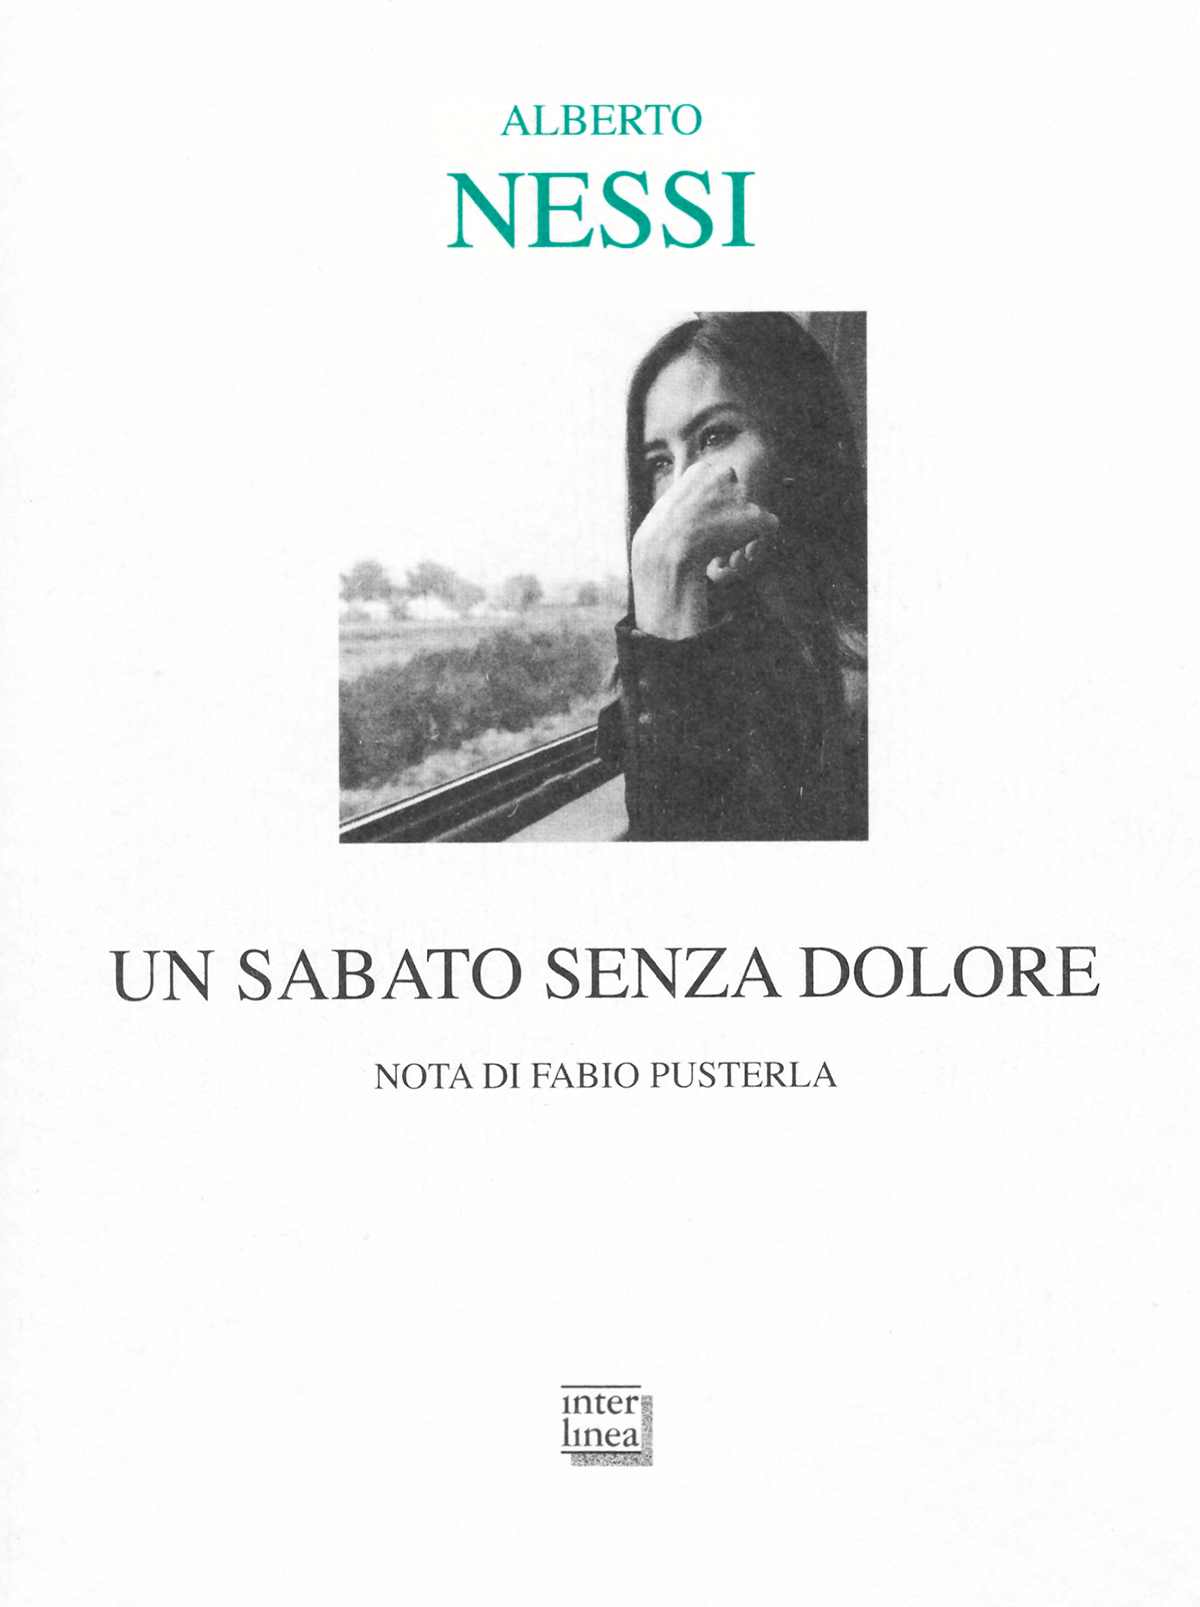 Copertina di Un sabato senza dolore di Alberto Nessi (Interlinea, Novara, 2016